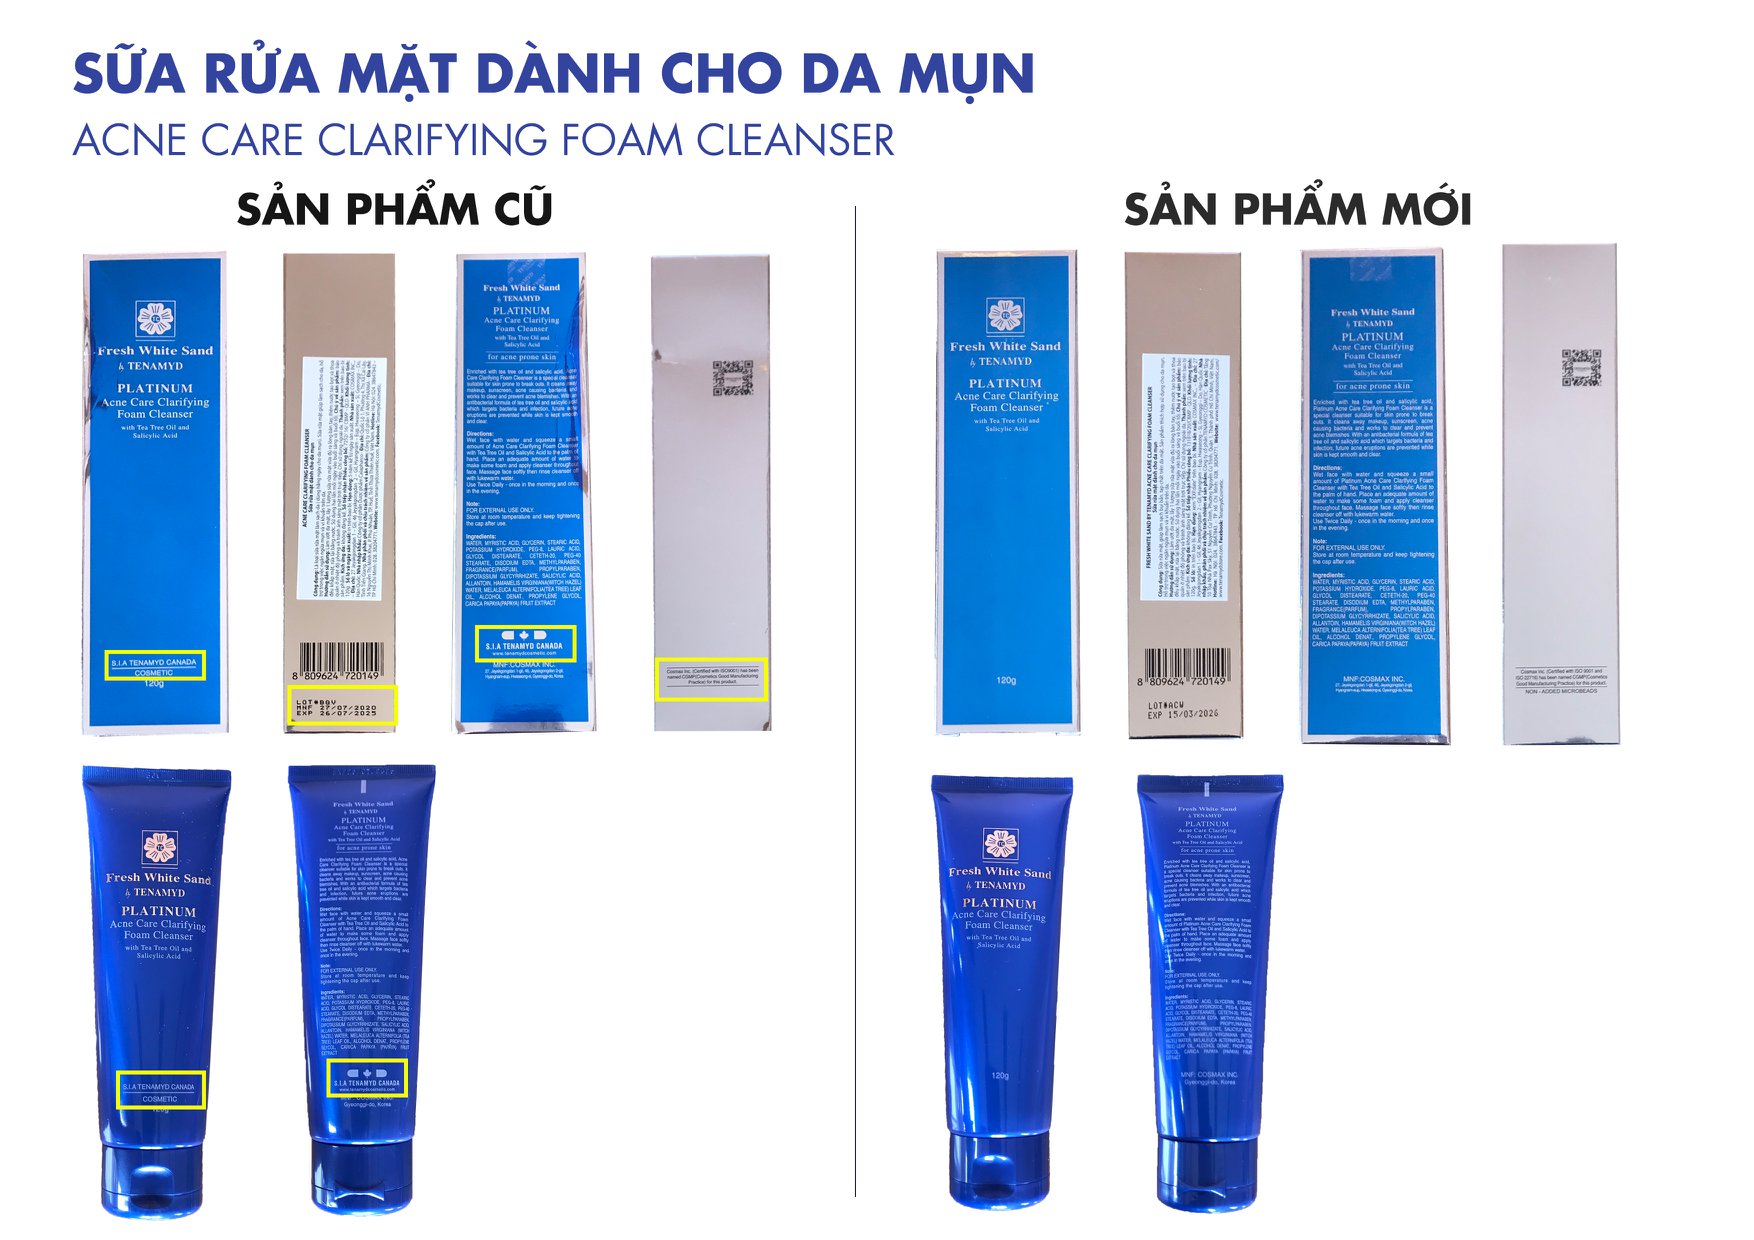 Sữa rửa mặt Tenamyd Fresh White Sand Platinum 120g ngừa mụn cho da dầu mụn - Hàng chính hãng - Lady & Men Viet Nam